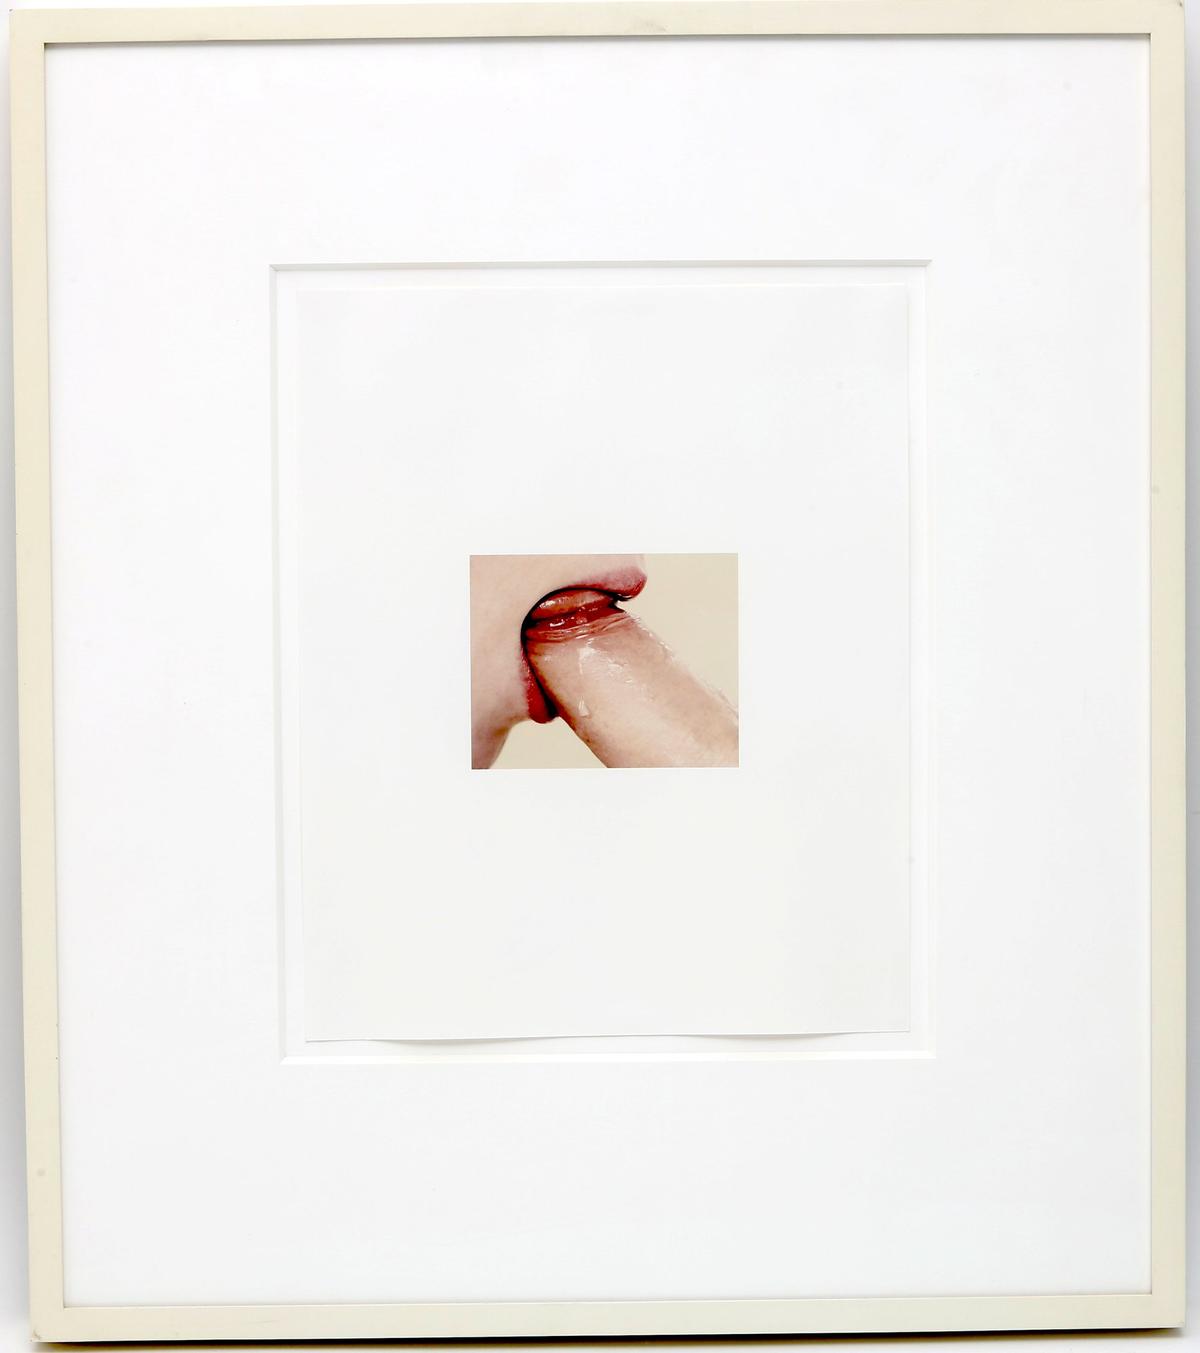 Framed Photo Erotic Art